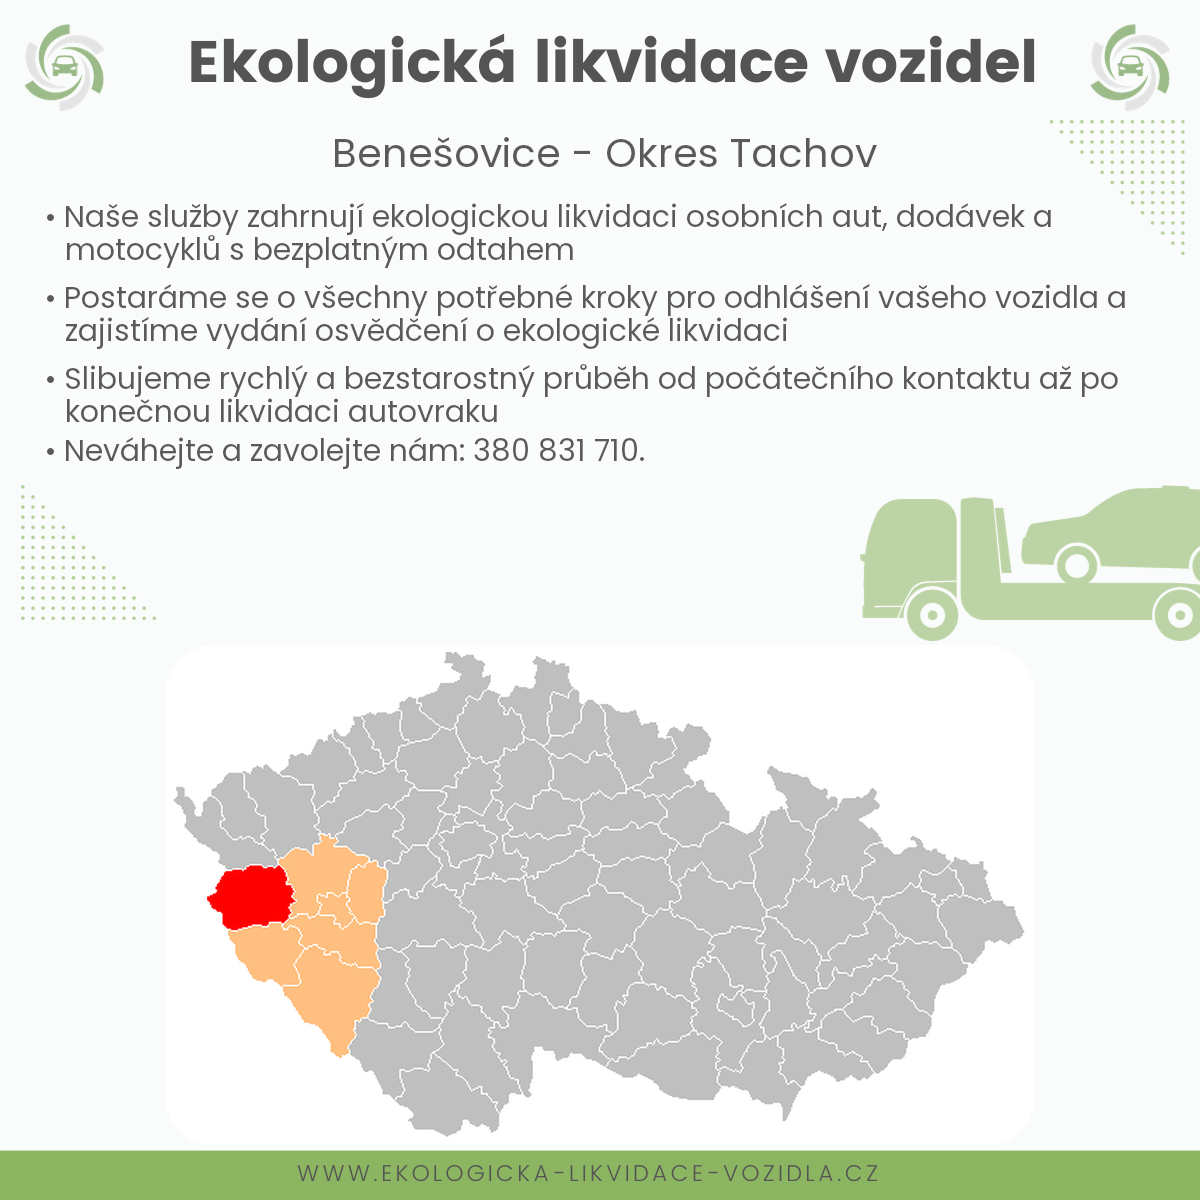 likvidace vozidel - Benešovice